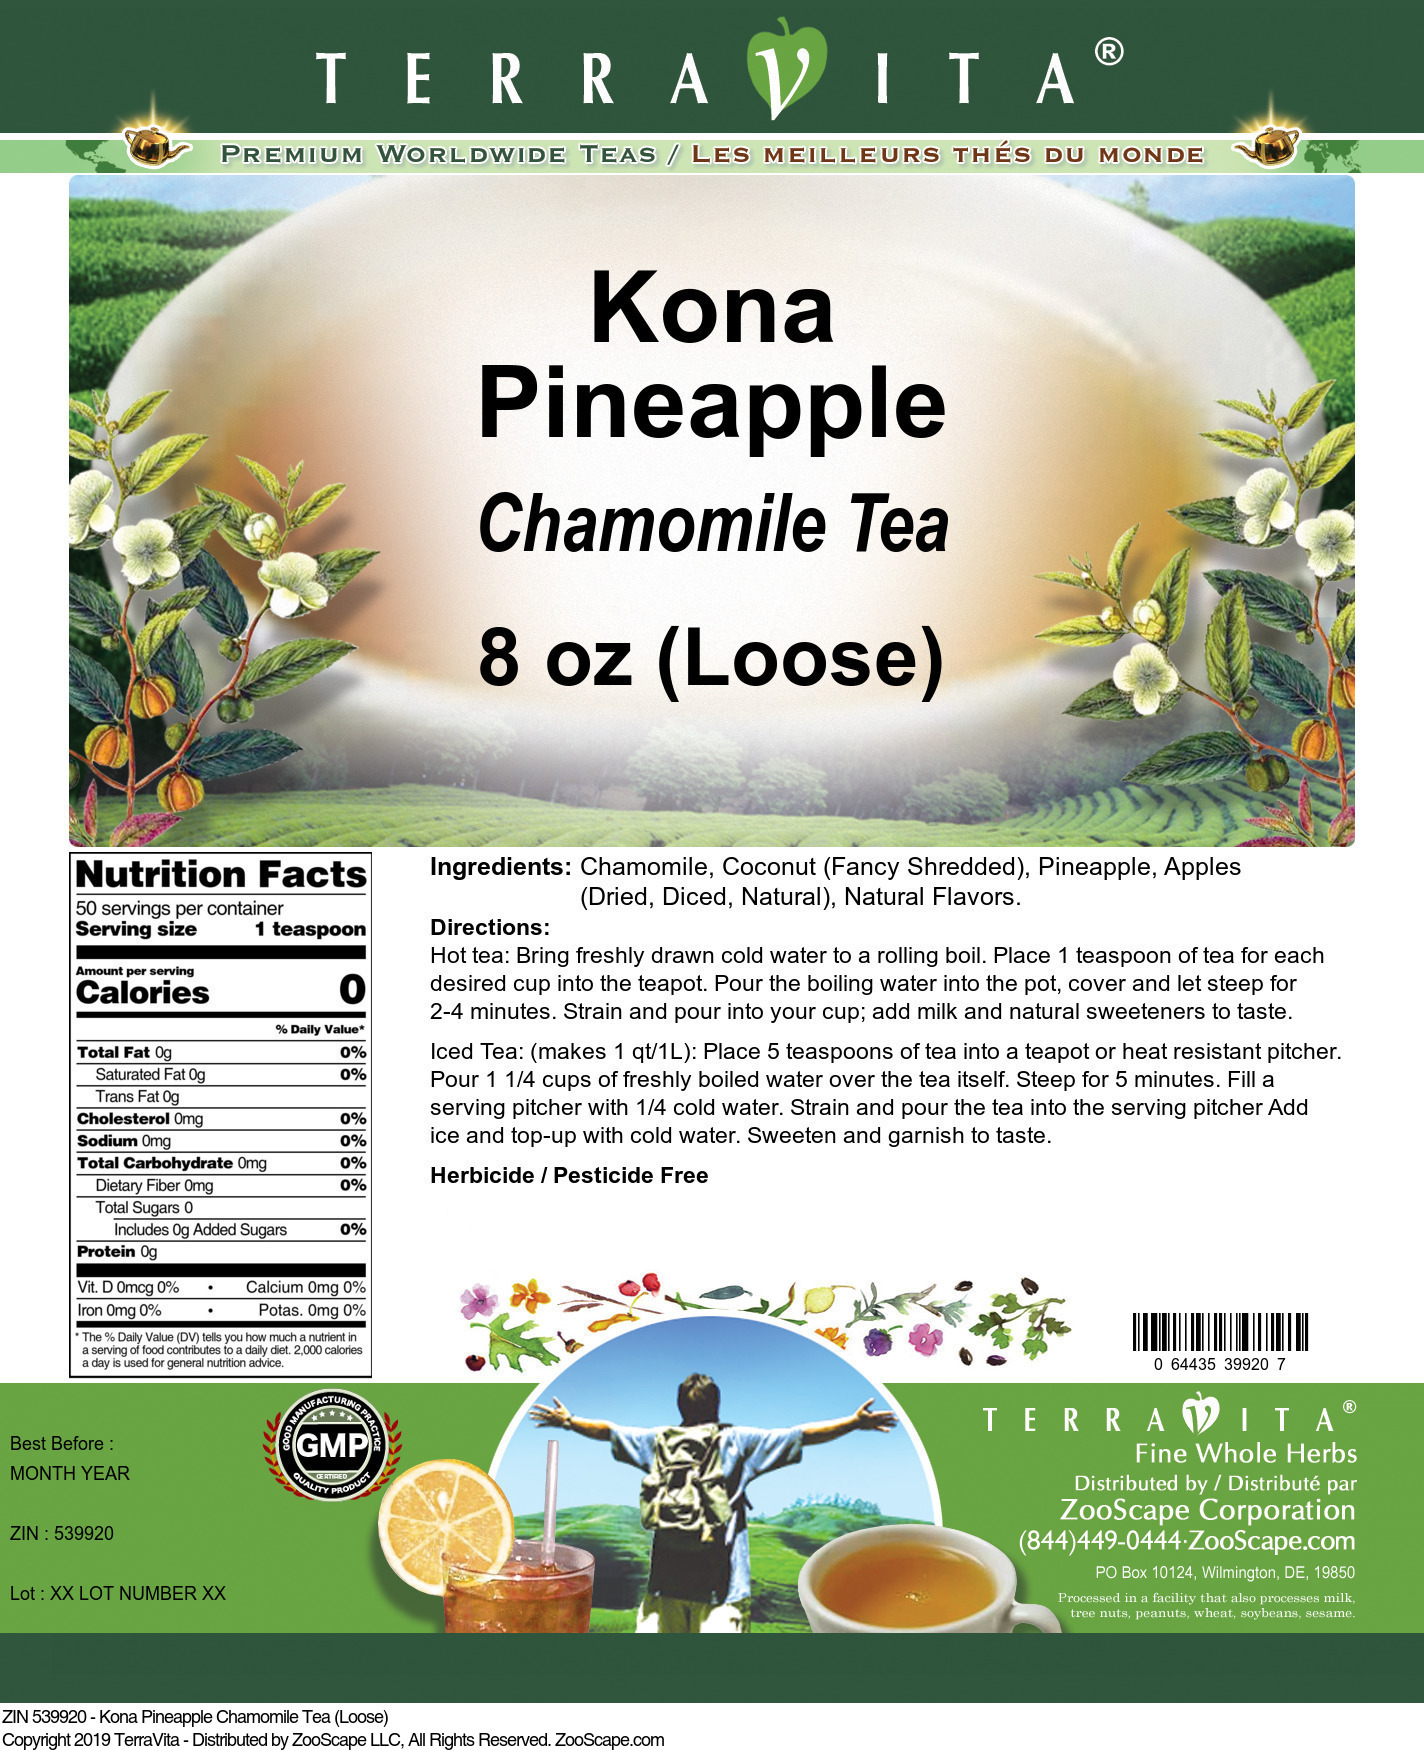 Kona Pineapple Chamomile Tea (Loose) - Label